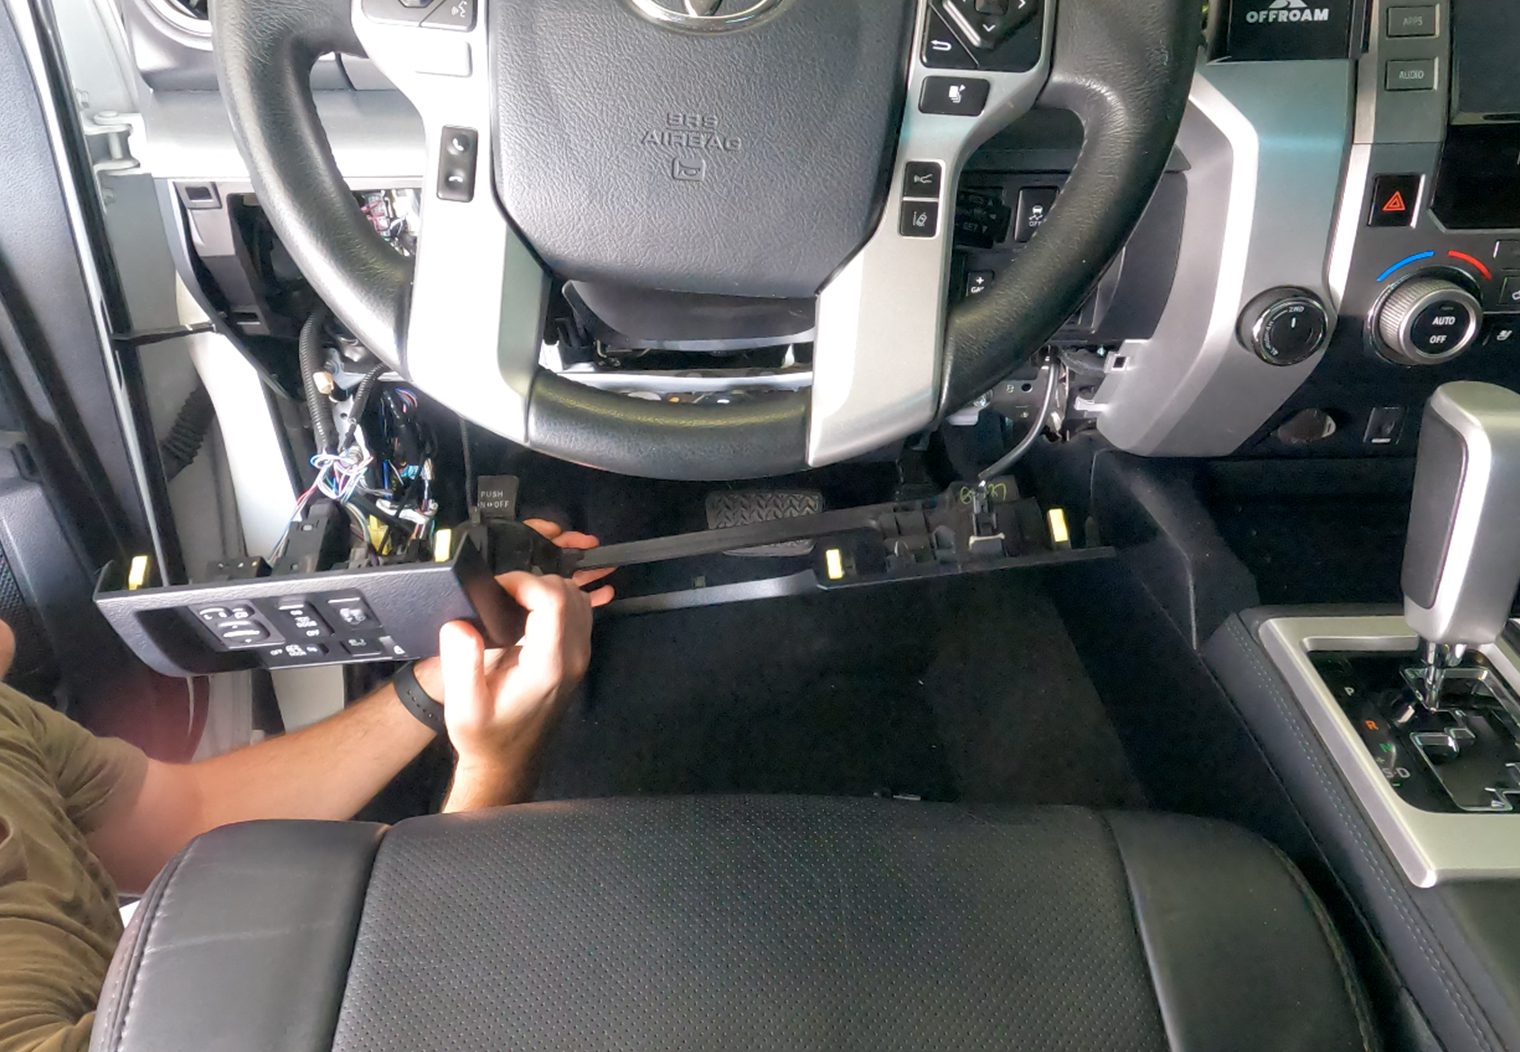 Removing panels below steering wheel